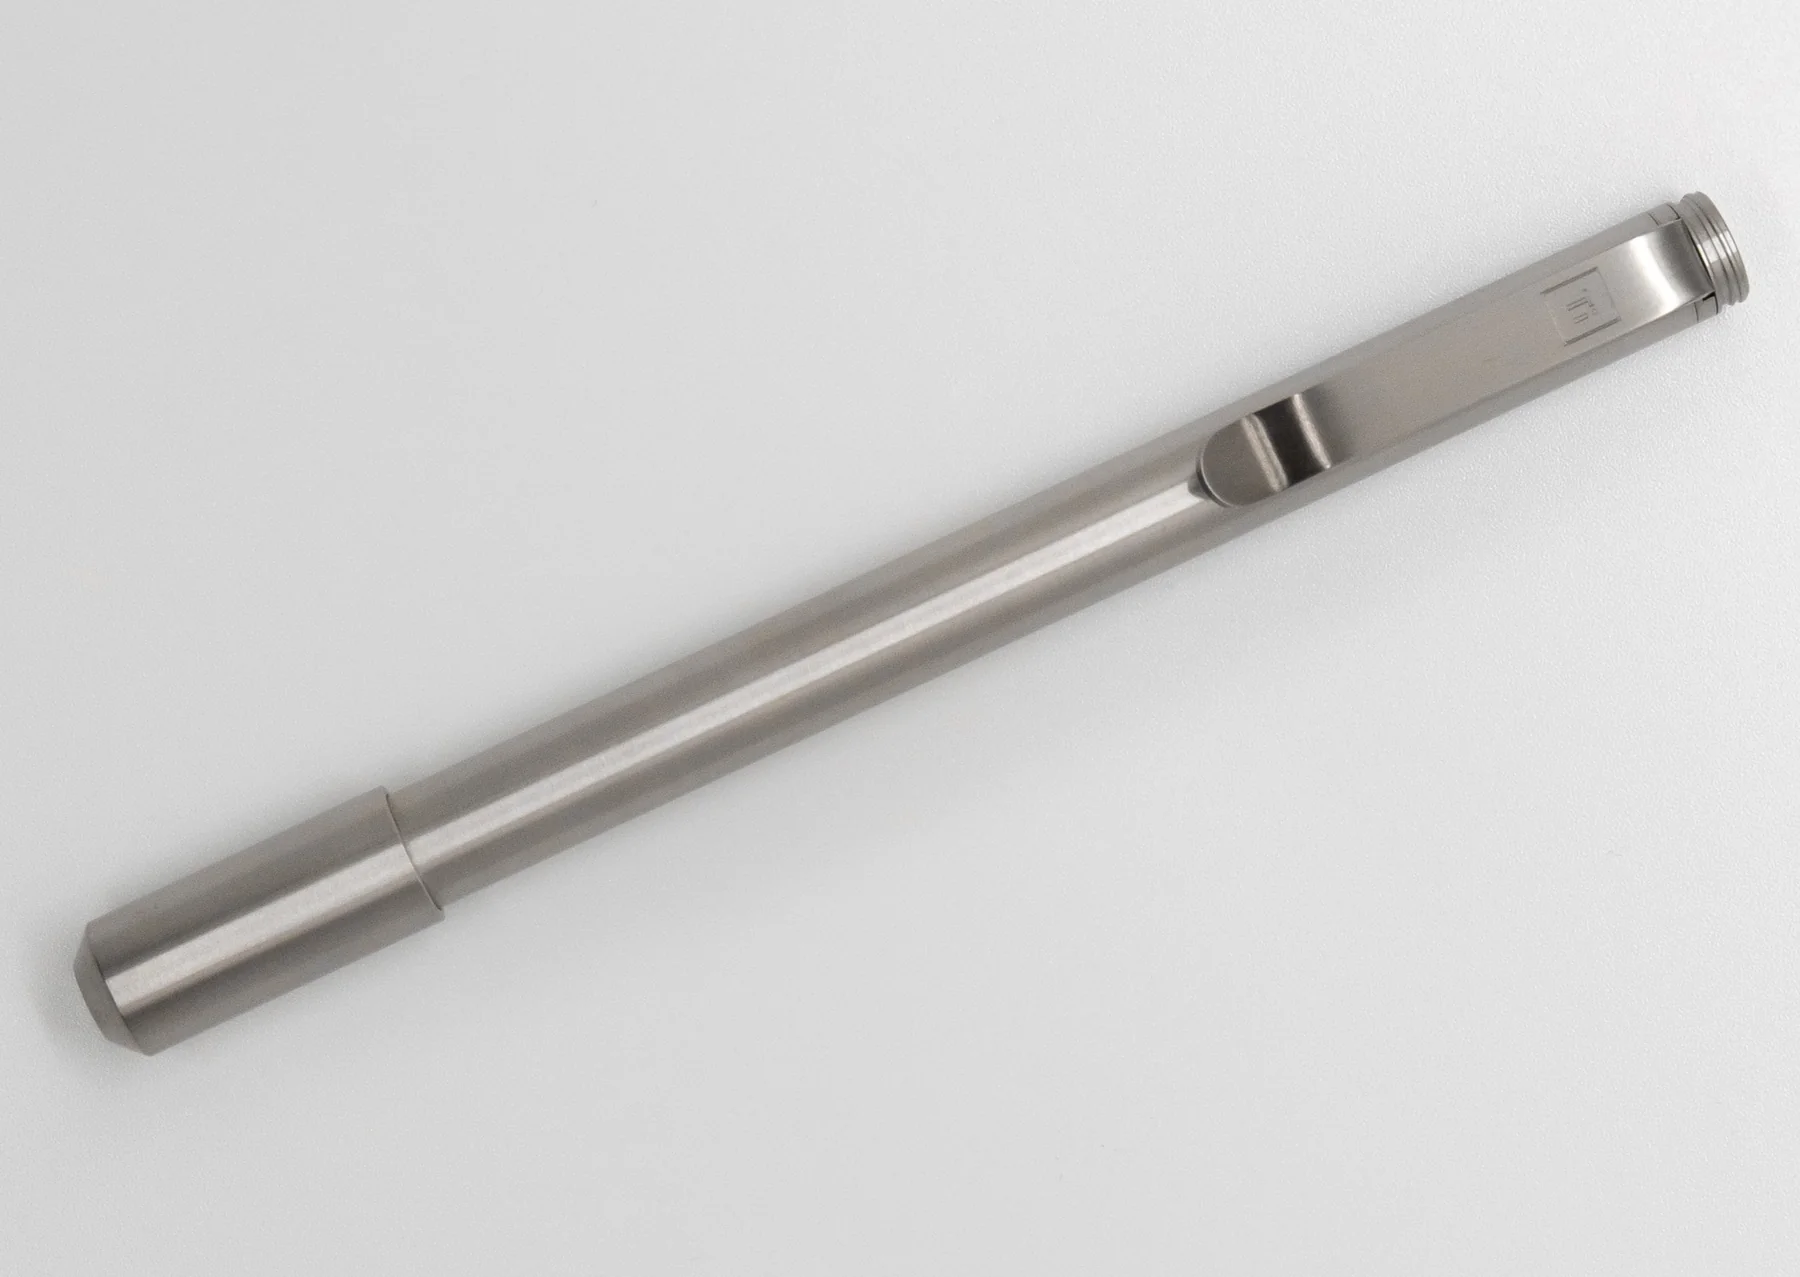 Big Idea Design PHX-Pen : A Timeless Stainless Steel Pen